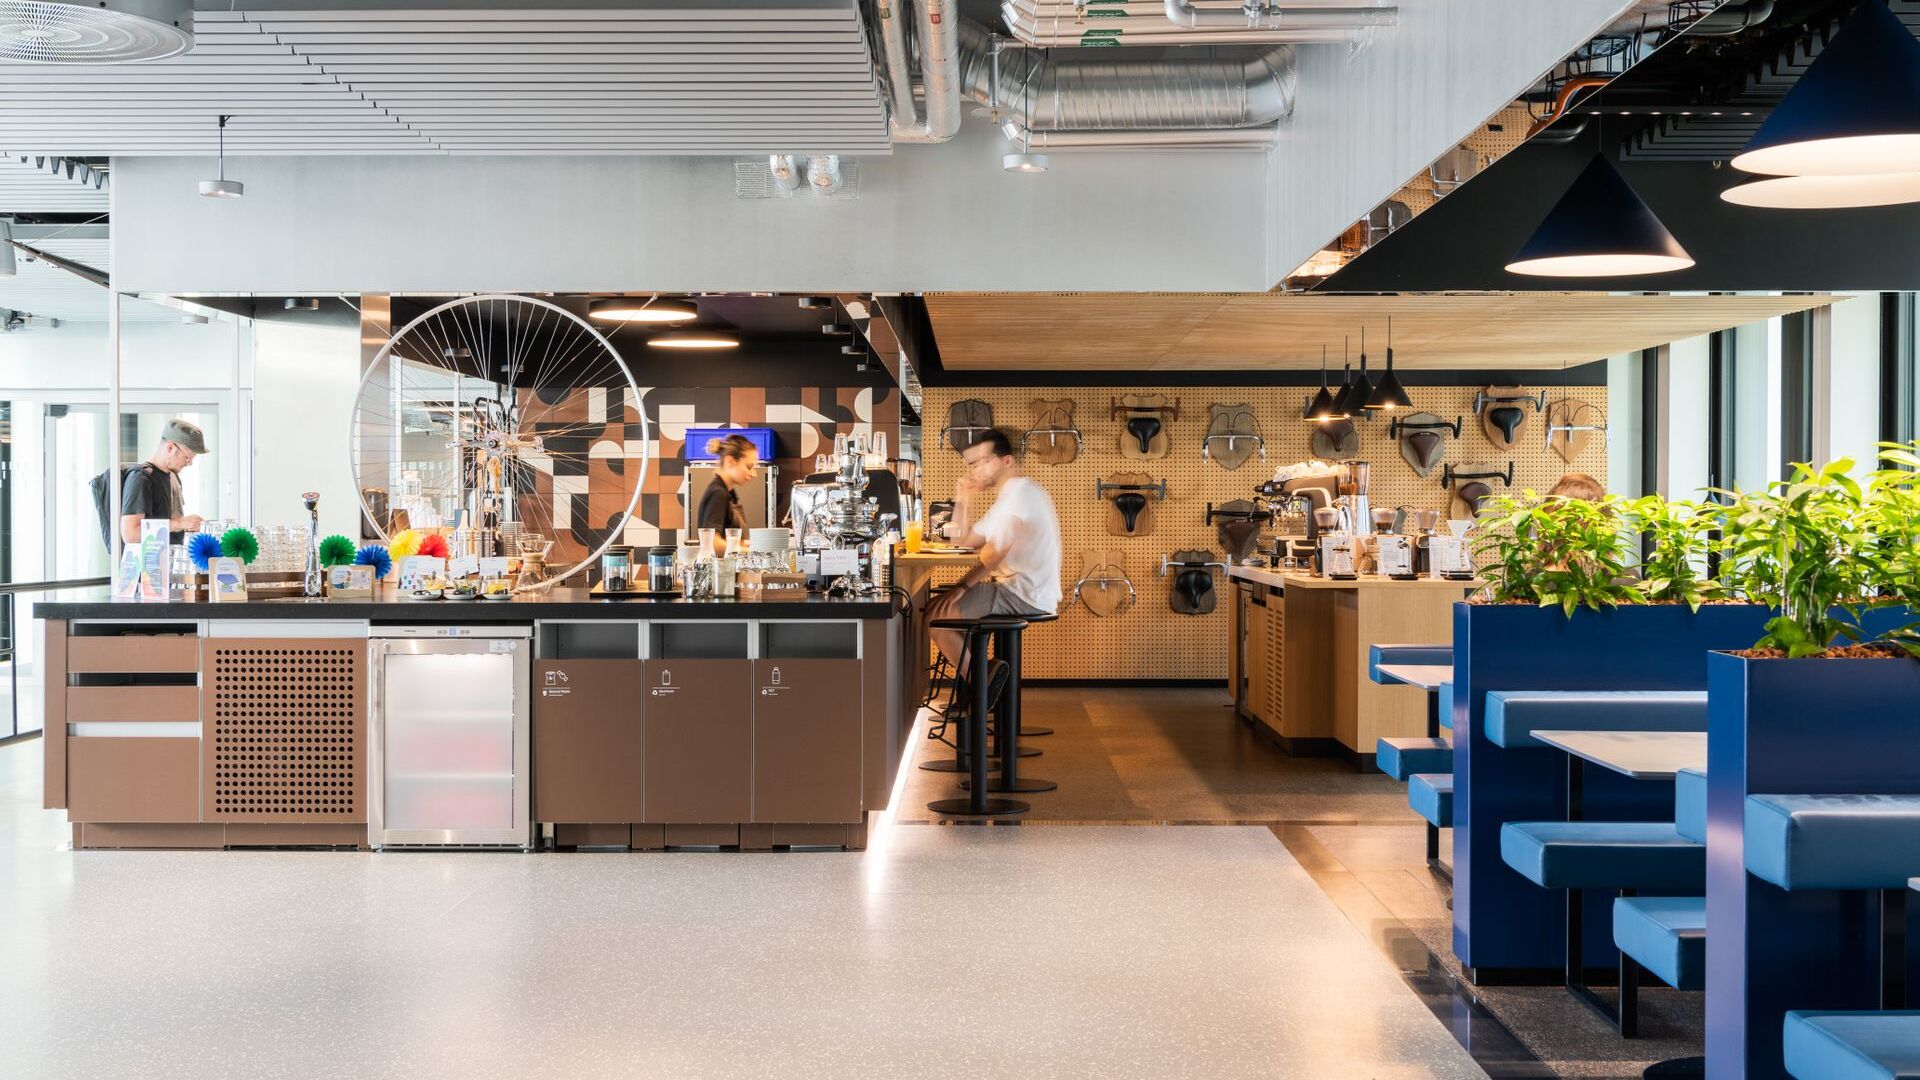 27 წლის 2022 ივნისს, შვეიცარიის ქვეყნის დირექტორის პატრიკ უორნკინგის თანდასწრებით, Google-მა გახსნა Campus Europaallee A1 ციურიხში, IT კომპანიის უმსხვილესი კვლევისა და განვითარების ცენტრი შეერთებული შტატების ფარგლებს გარეთ: შტაბ-ბინა მდებარეობს Kasernenstrasse-ის 95-ში, მთავართან ახლოს. შვეიცარიის ეკონომიკური დედაქალაქის რკინიგზის სადგური